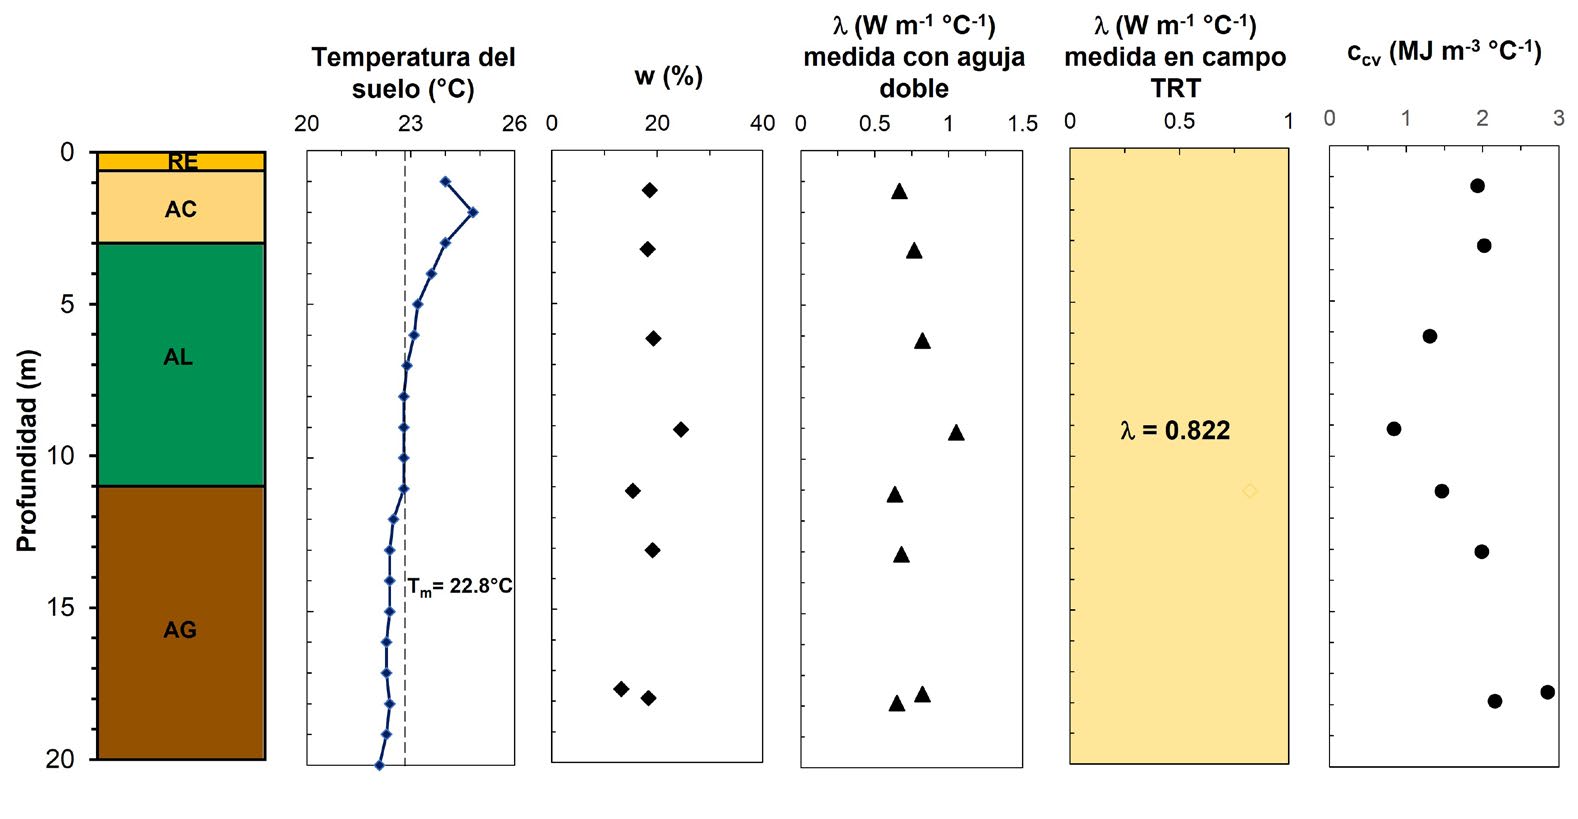 Perfil estratigráfico con la temperatura del sitio de prueba, el contenido de agua, así como las propiedades térmicas medidas en laboratorio y campo